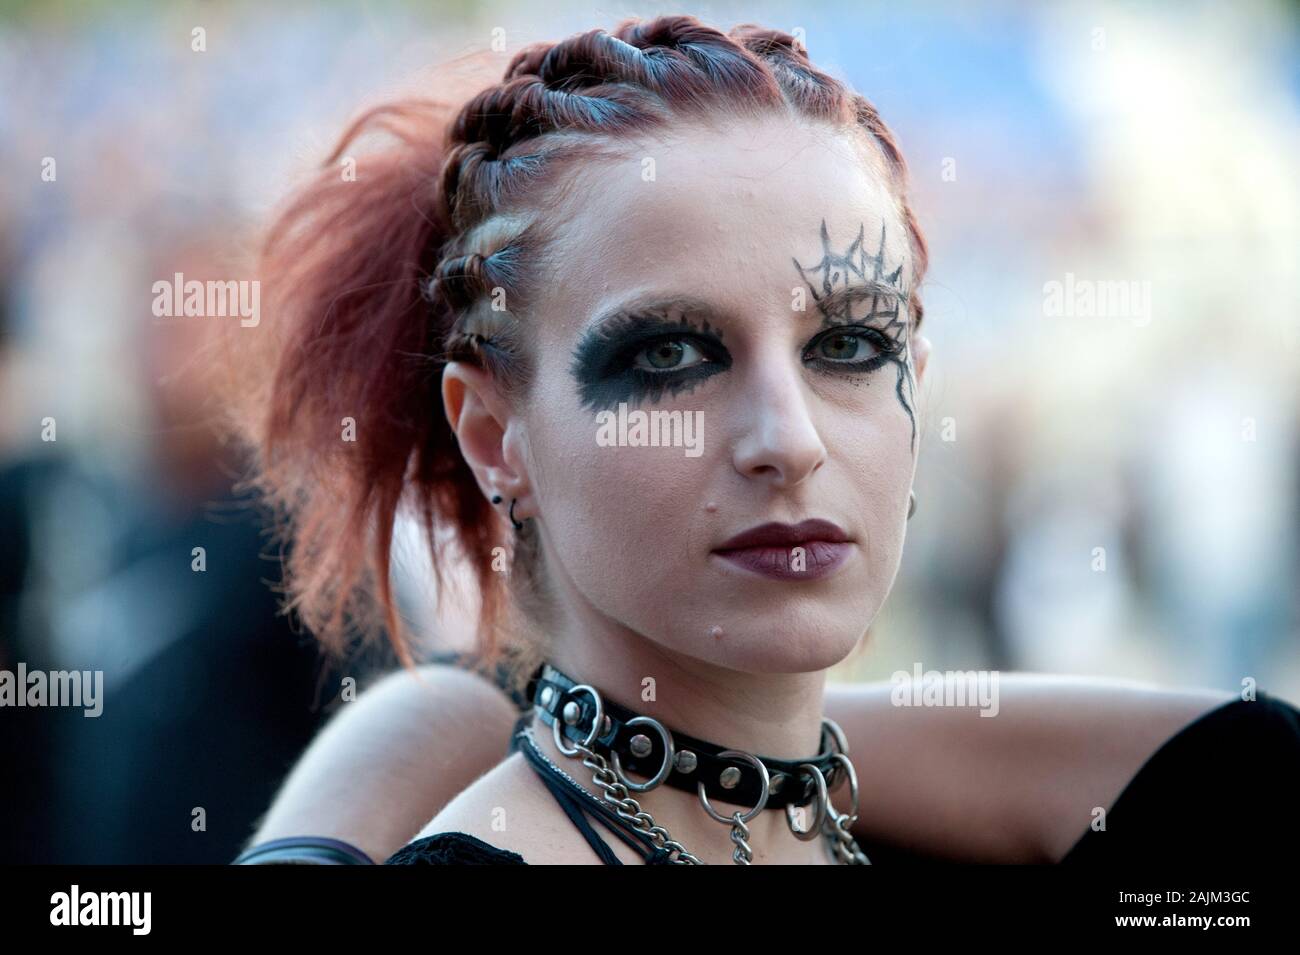 Milano Italia 11 luglio 2012 ,concerto dal vivo di Marilyn Manson presso l' Ippodromo del galoppo' : Marilyn Manson è un fan prima del concerto Foto Stock